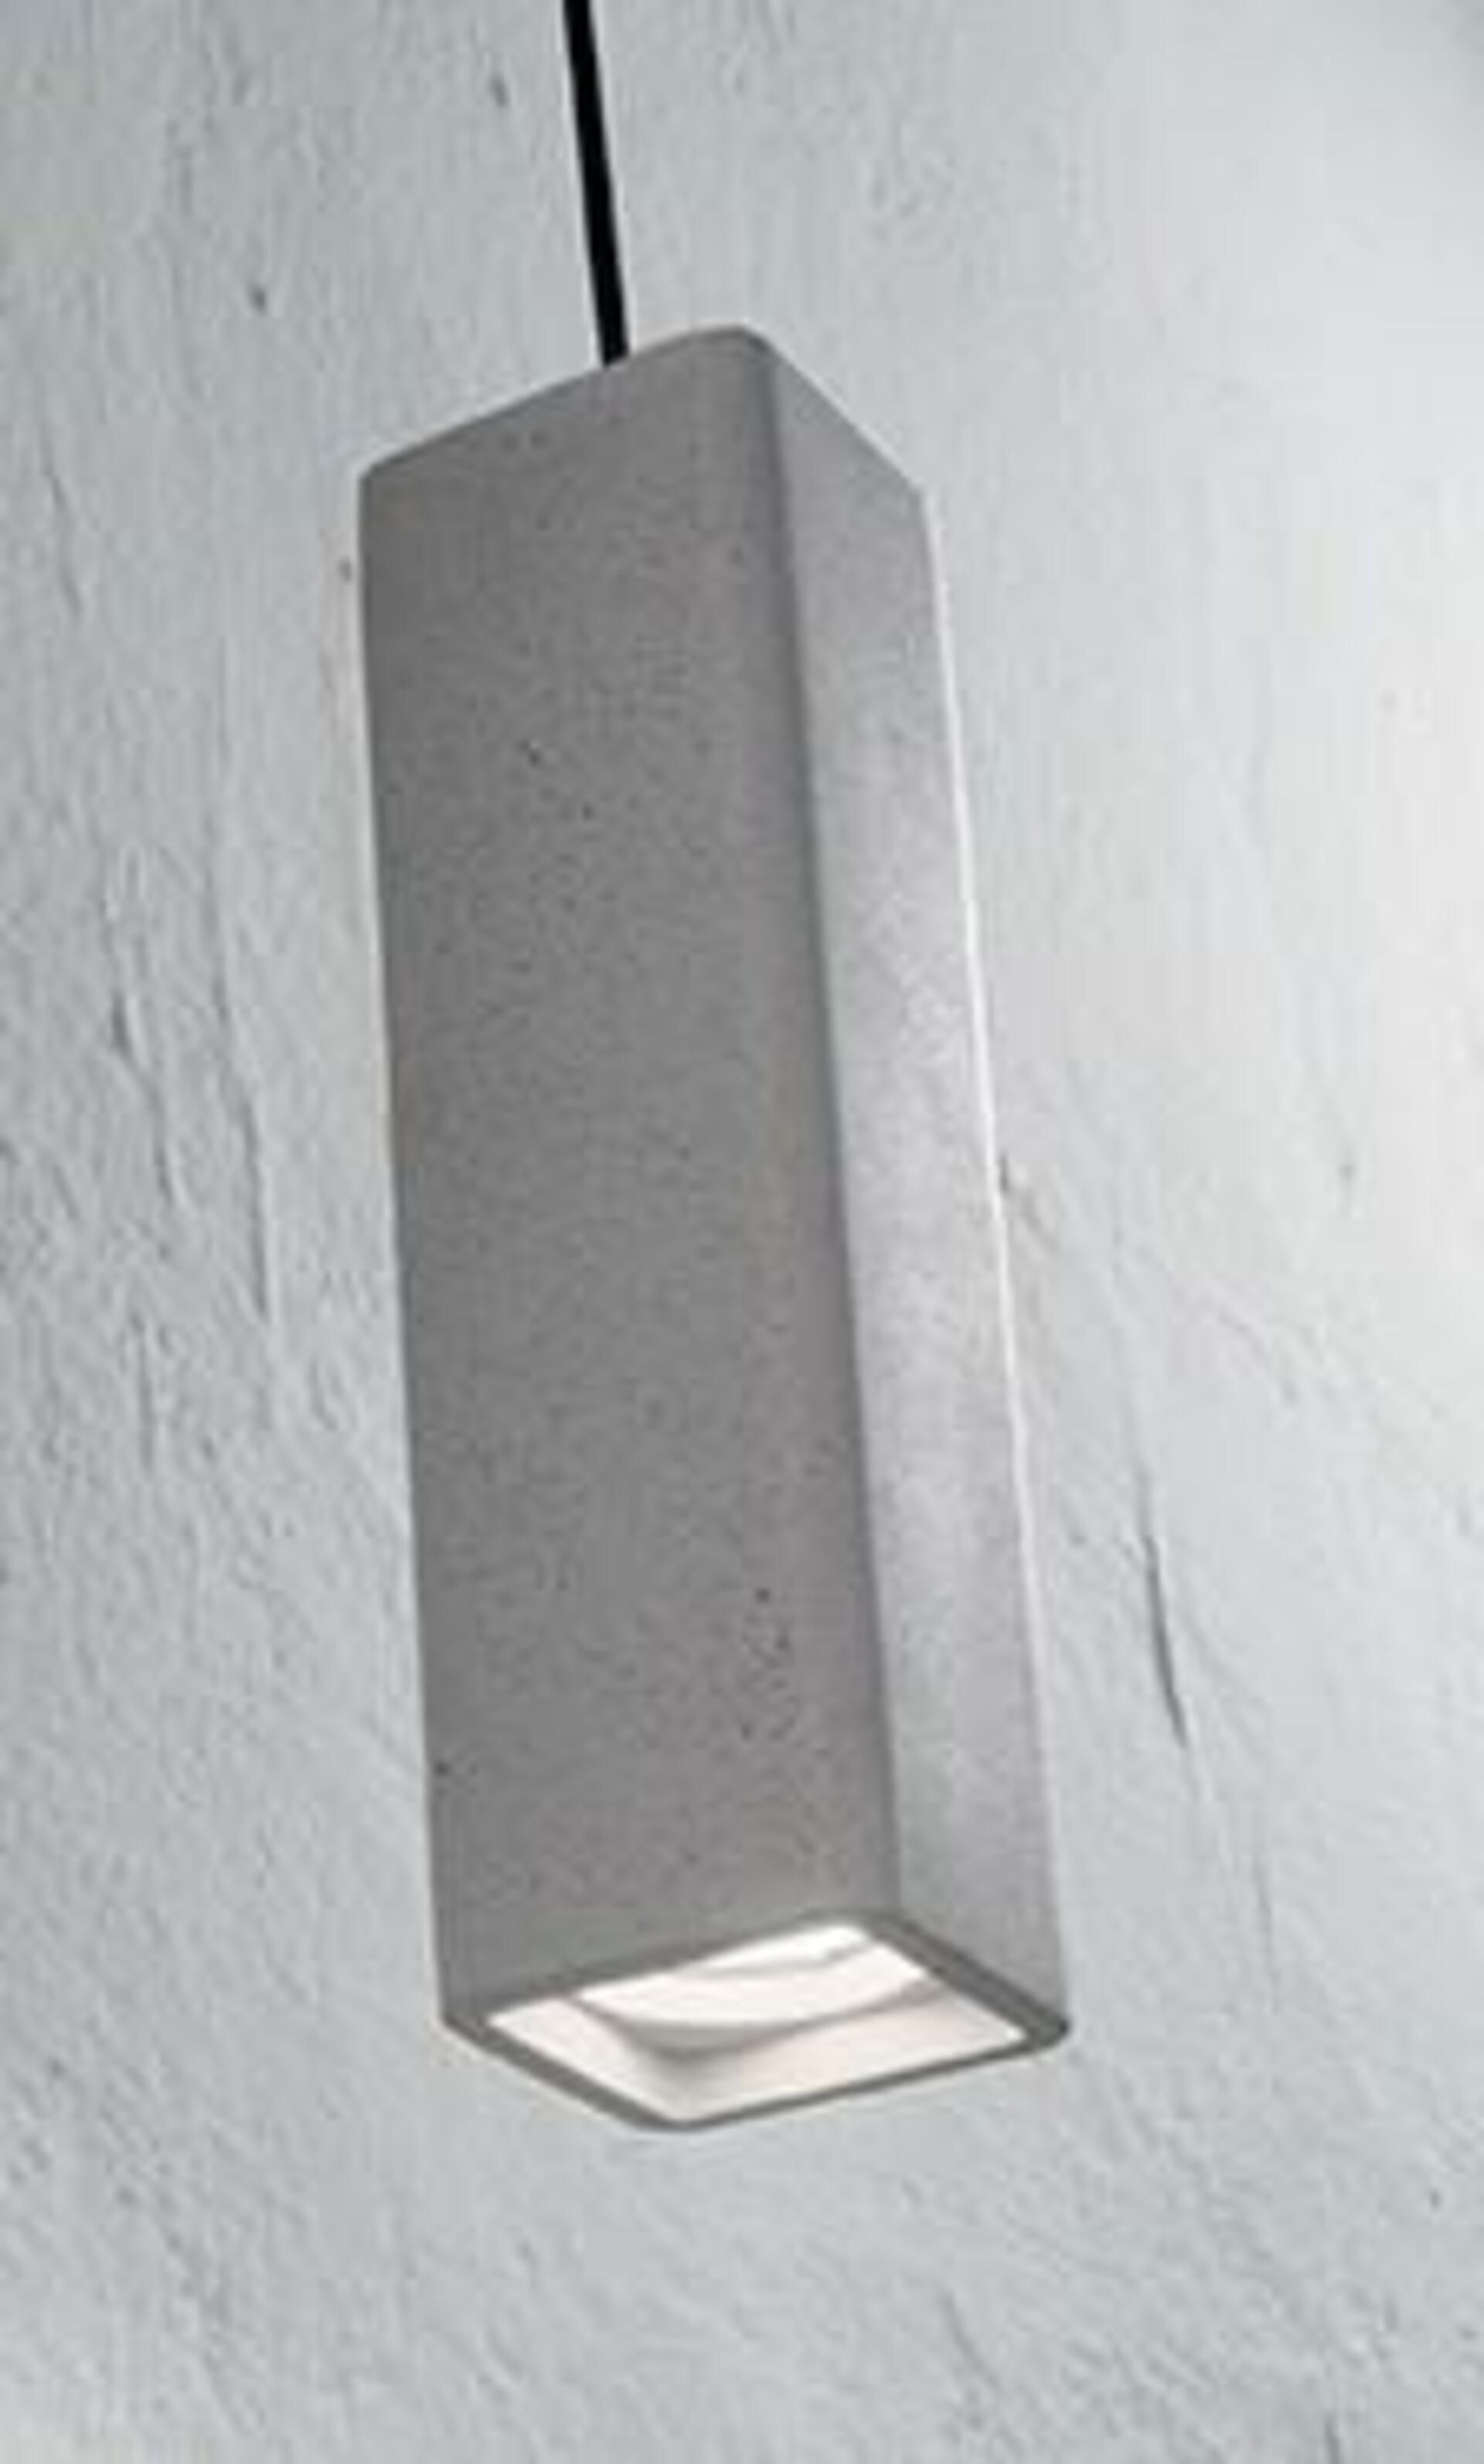 Závěsné svítidlo Ideal Lux Oak SP1 Square Cemento 150673 hranaté betonové